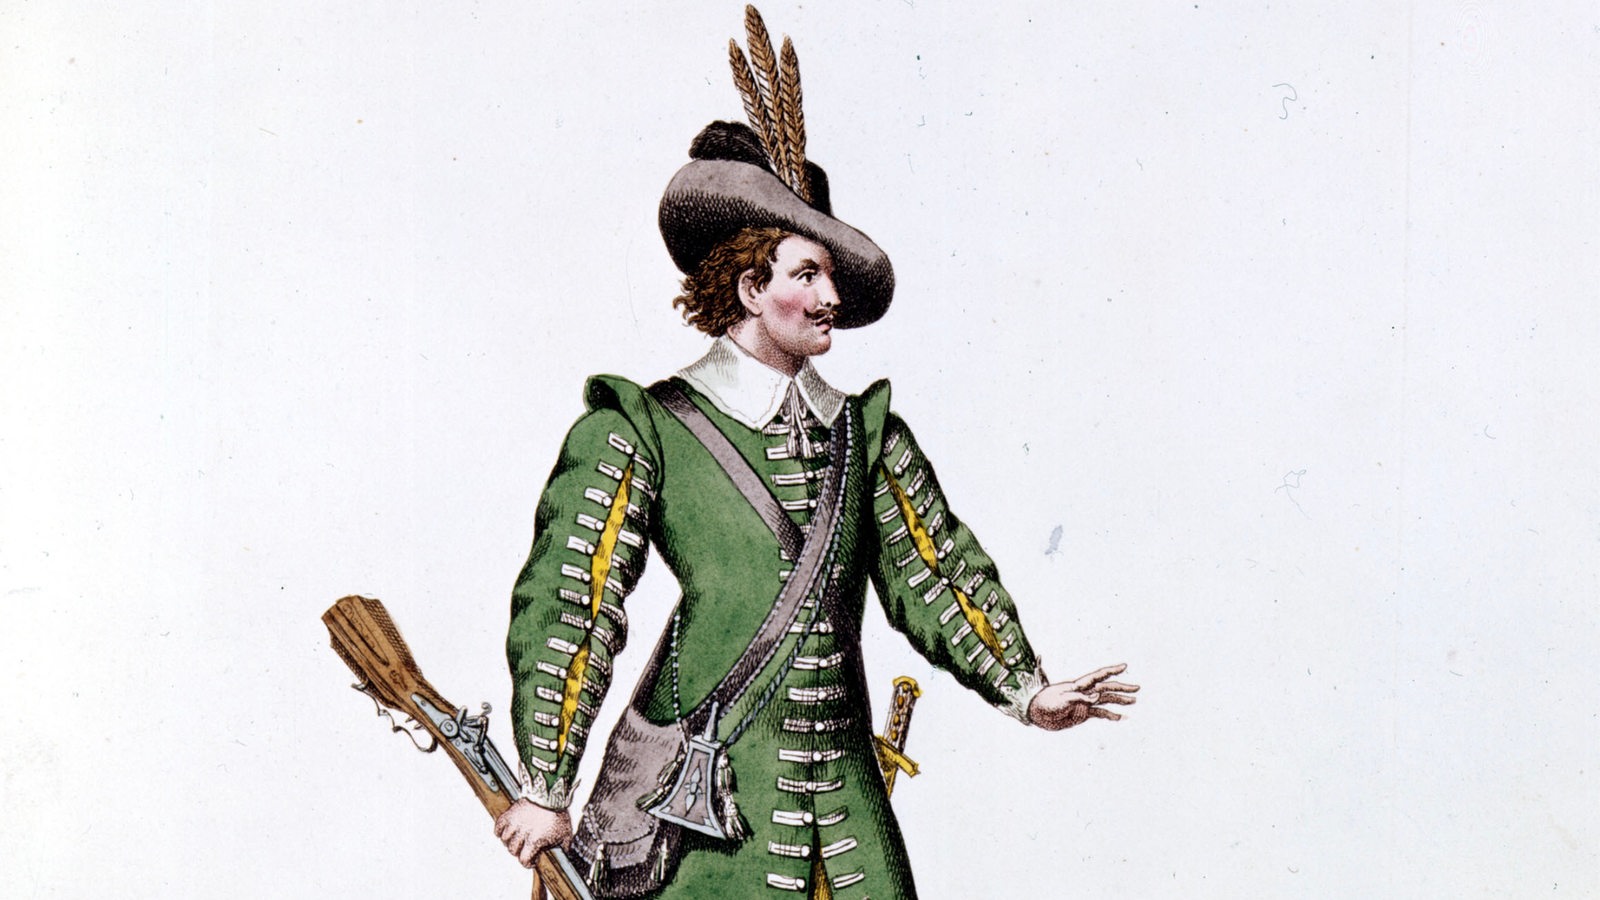 Zeichnung eines Jägers zur Oper "Der Freischütz" von Heinrich Stuermer